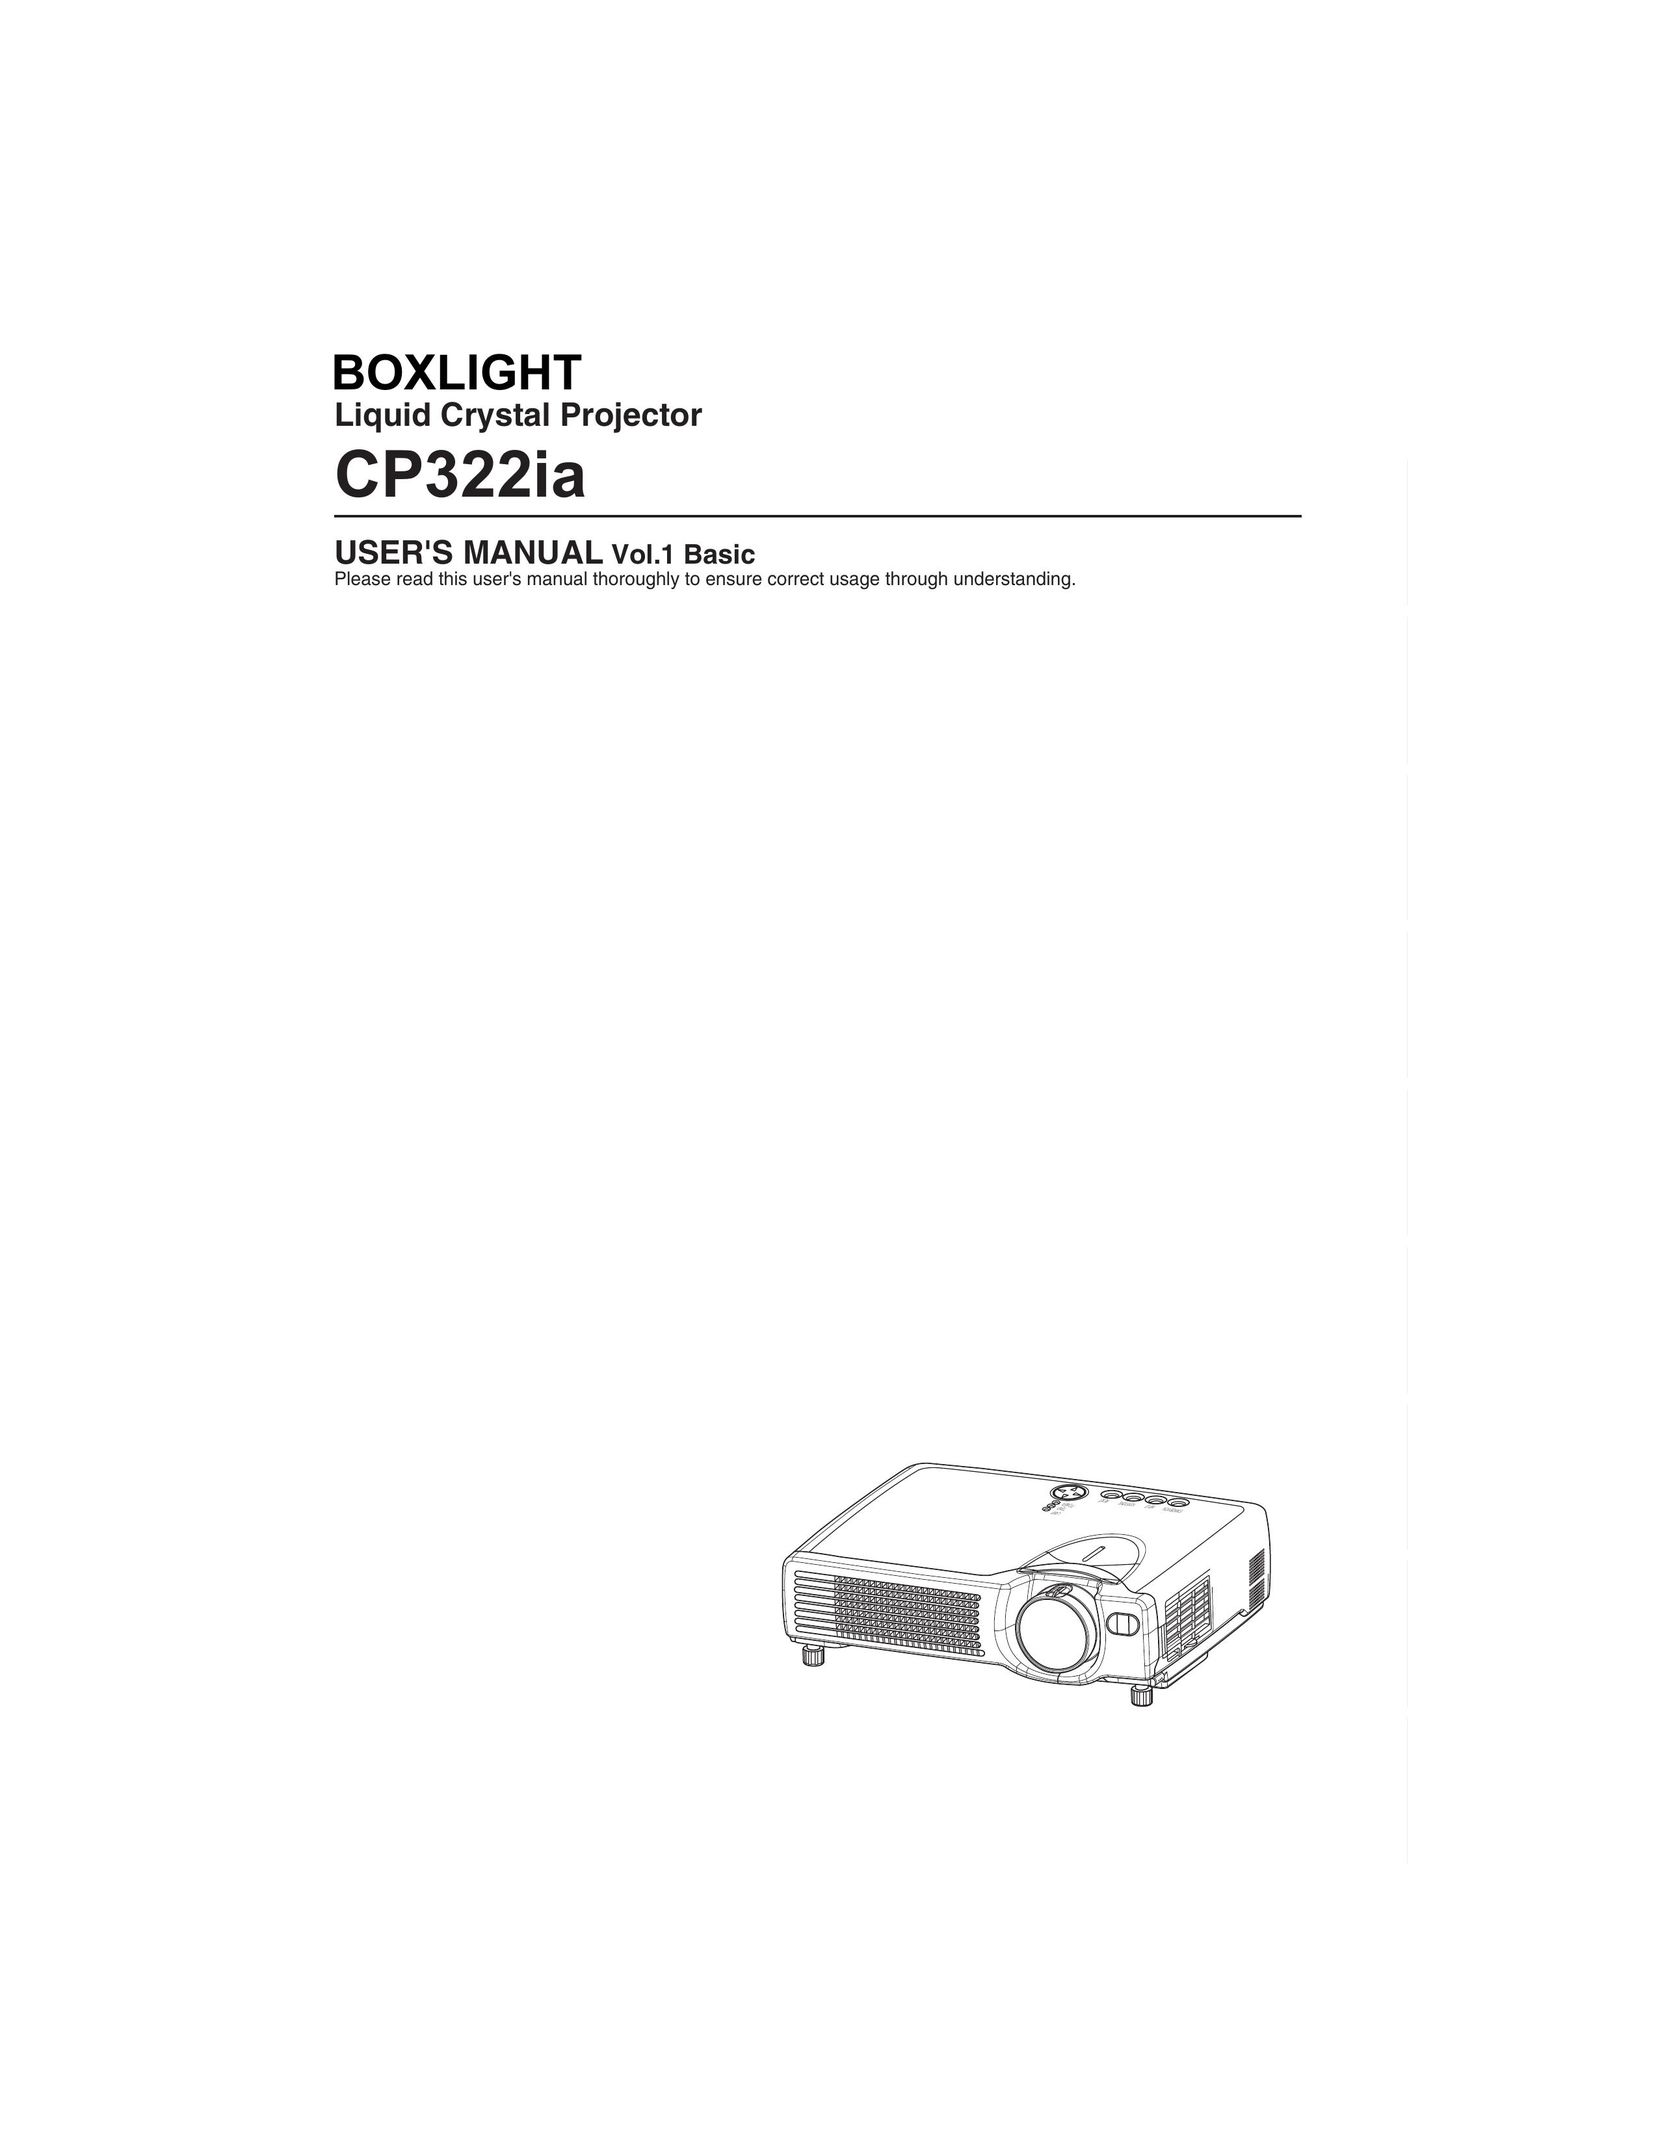 BOXLIGHT CP322ia Projector User Manual